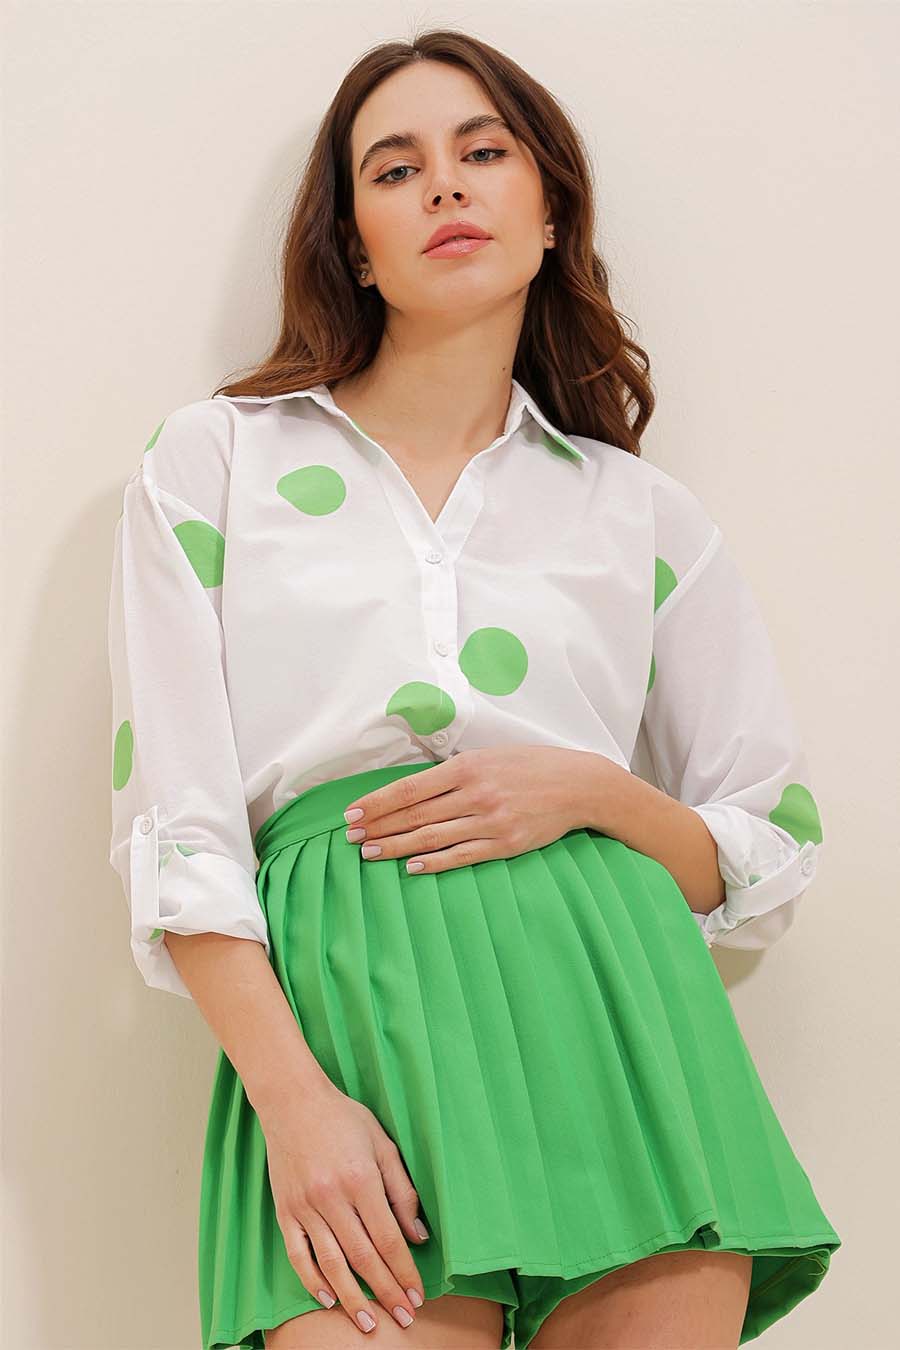 Γυναικείο πουκάμισο Millie, Λευκό/Πράσινο 3